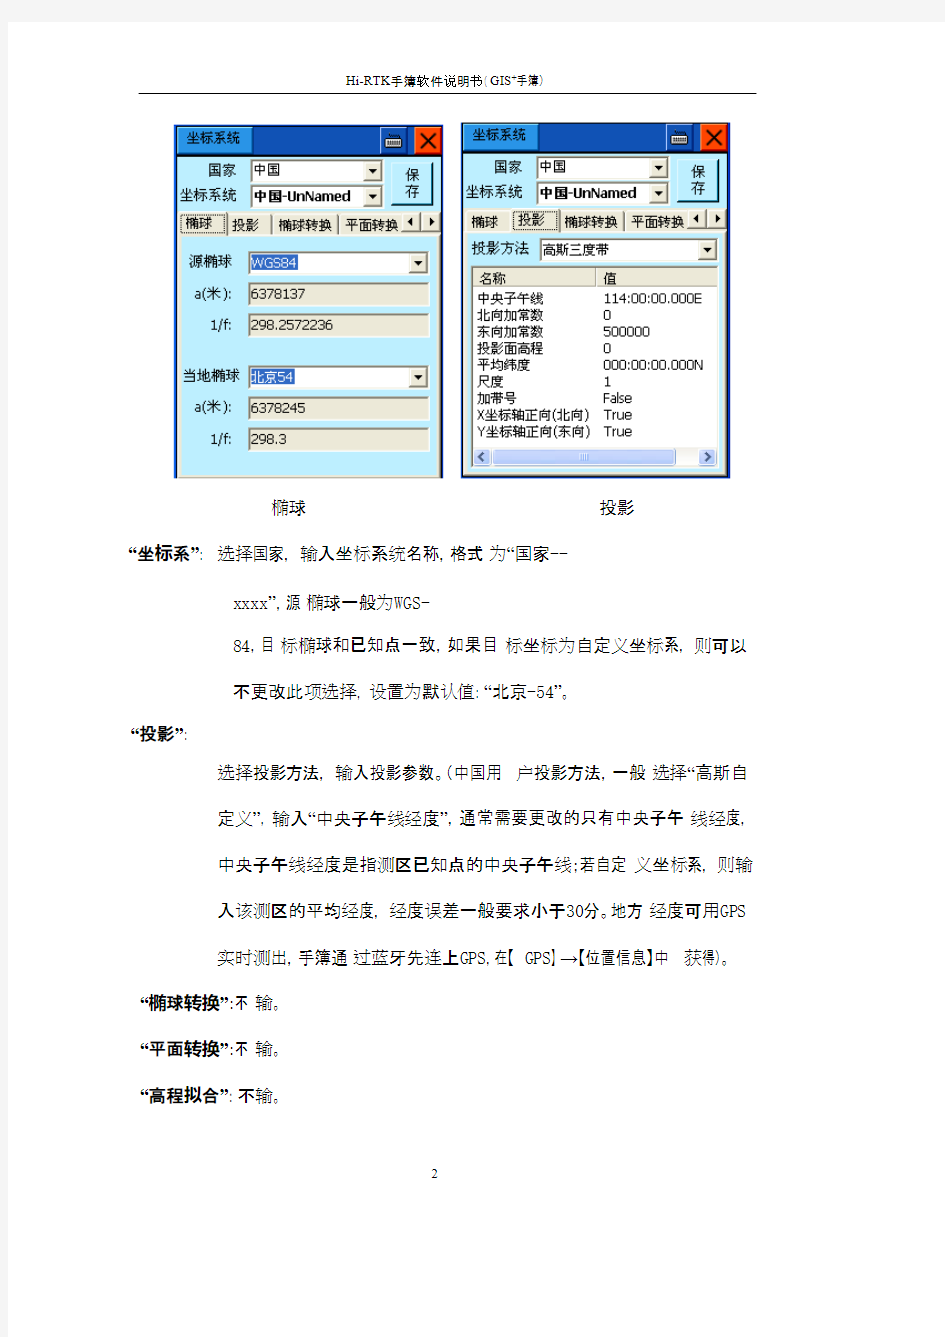 中海达操作规程(hi-rtk手簿软件说明书)